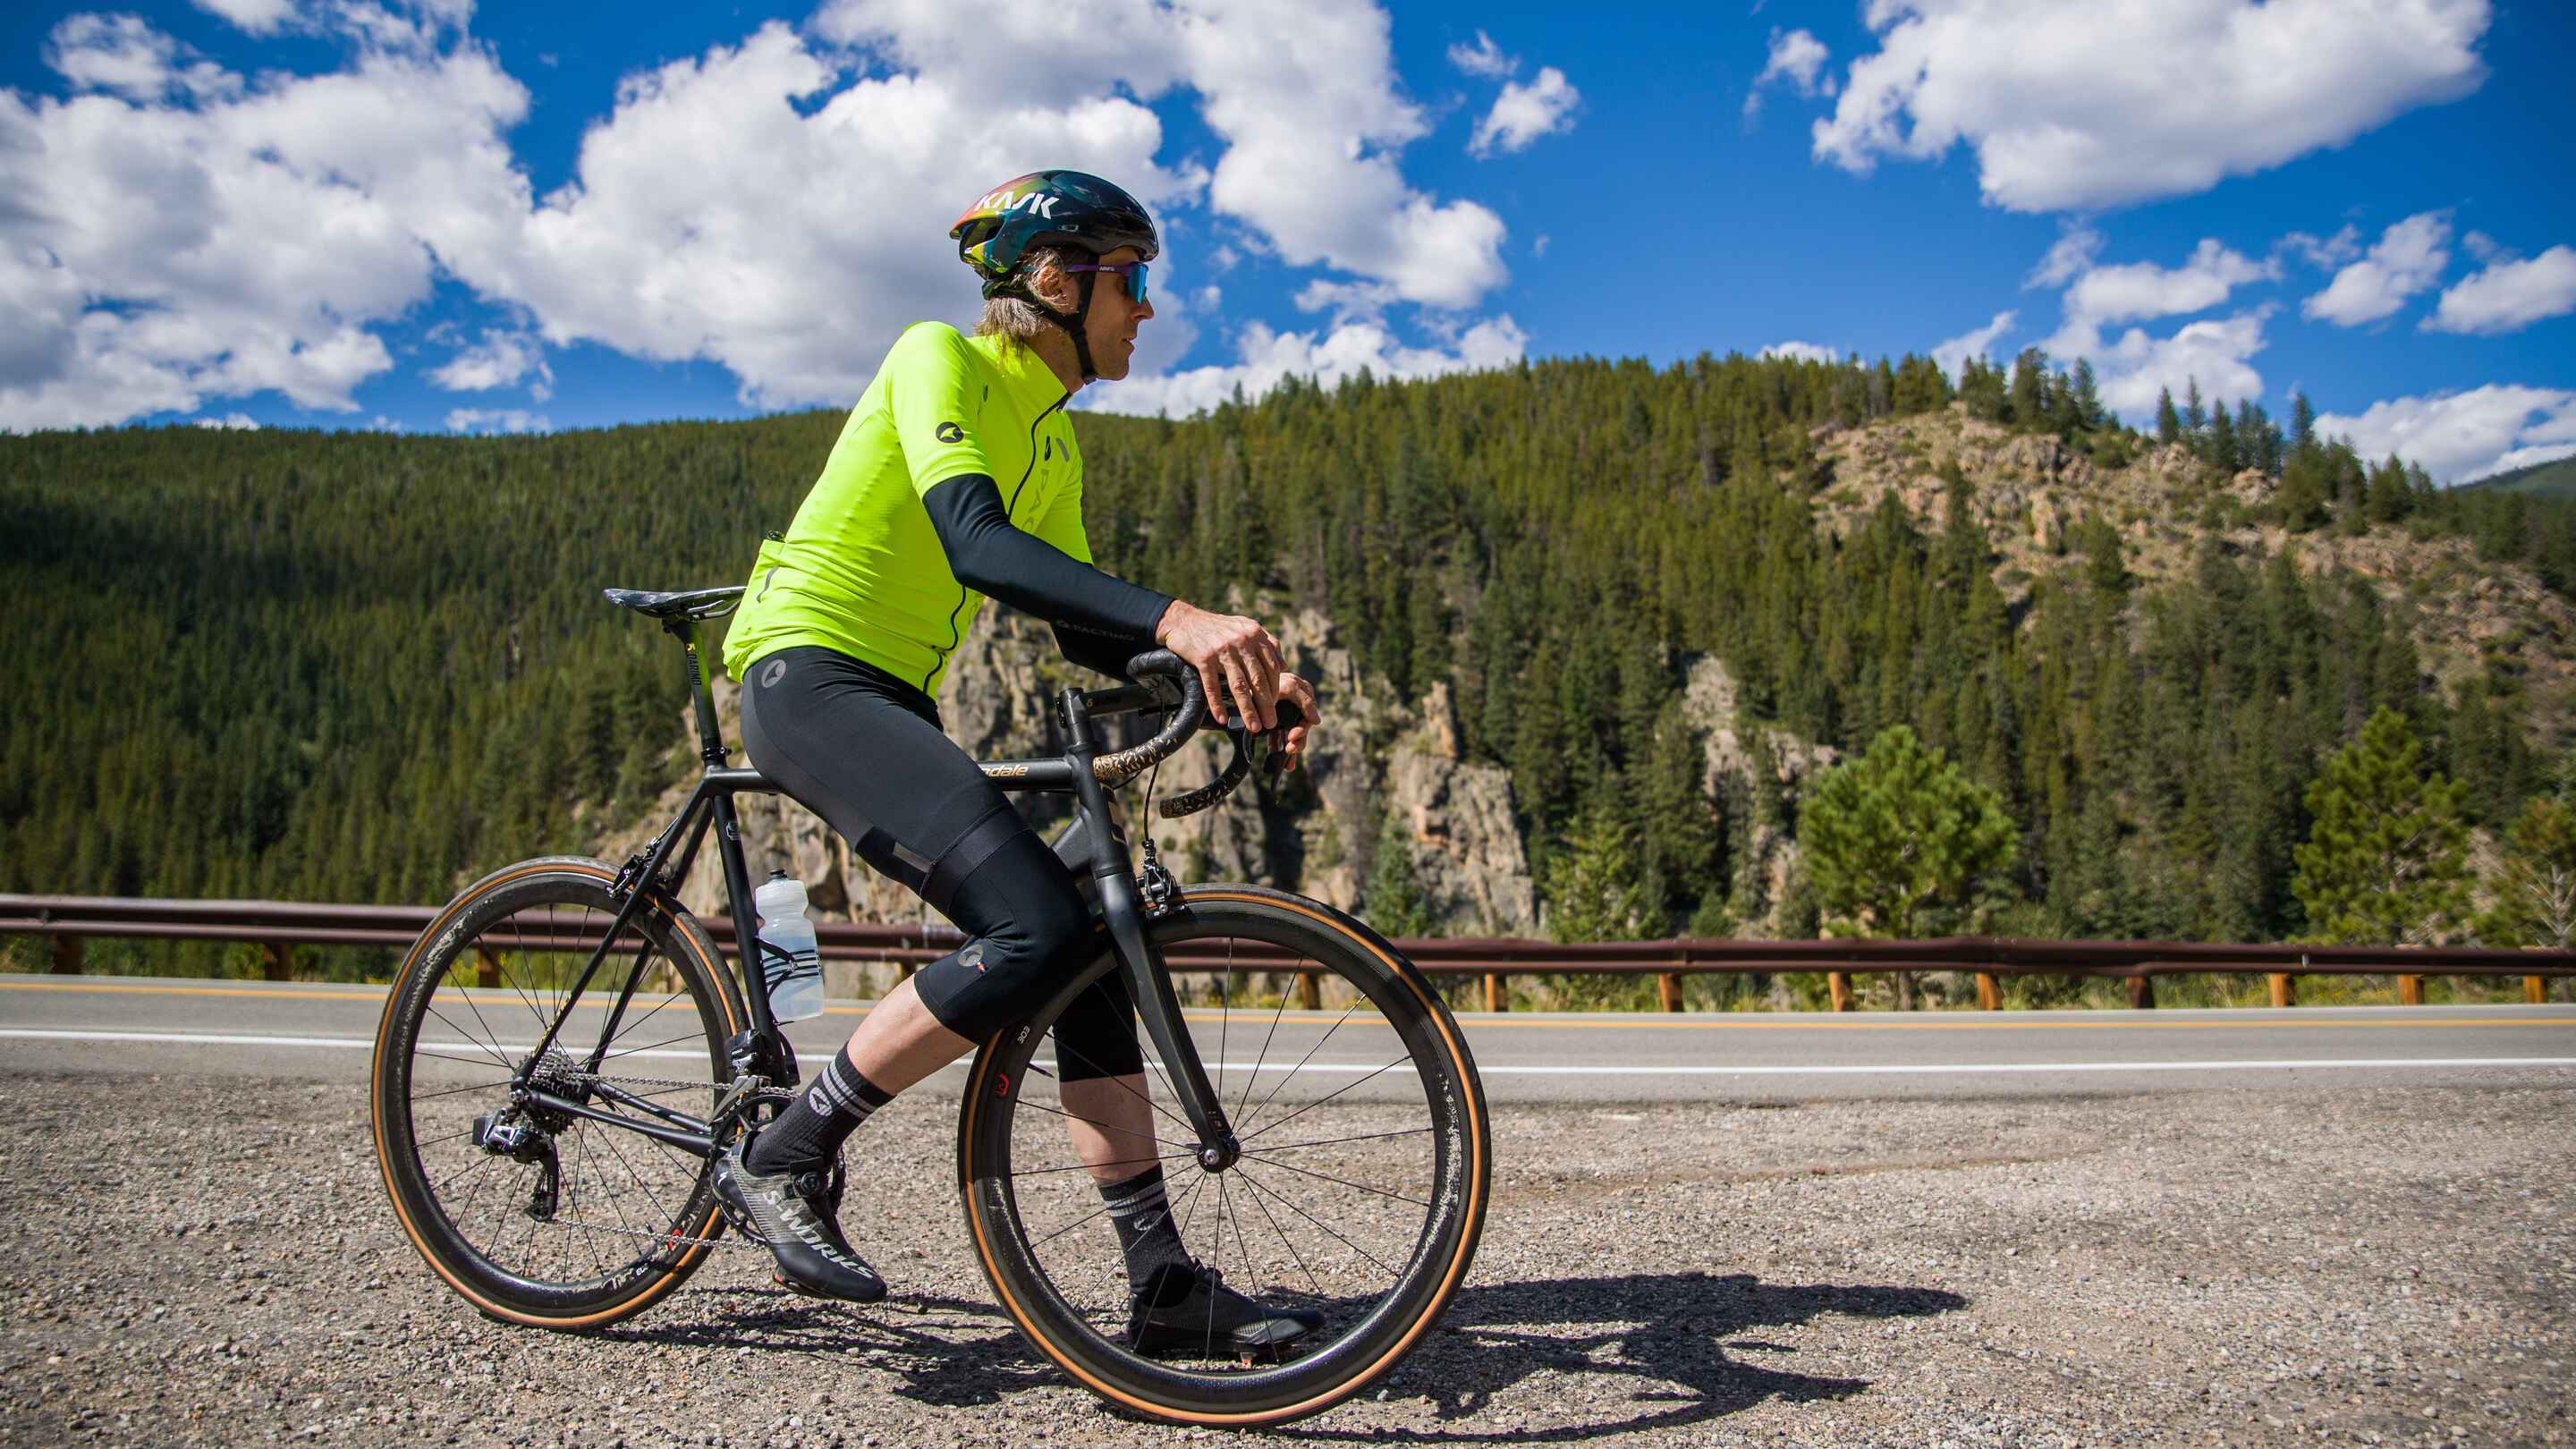 High-Viz Cyclist in the Colorado Mountains